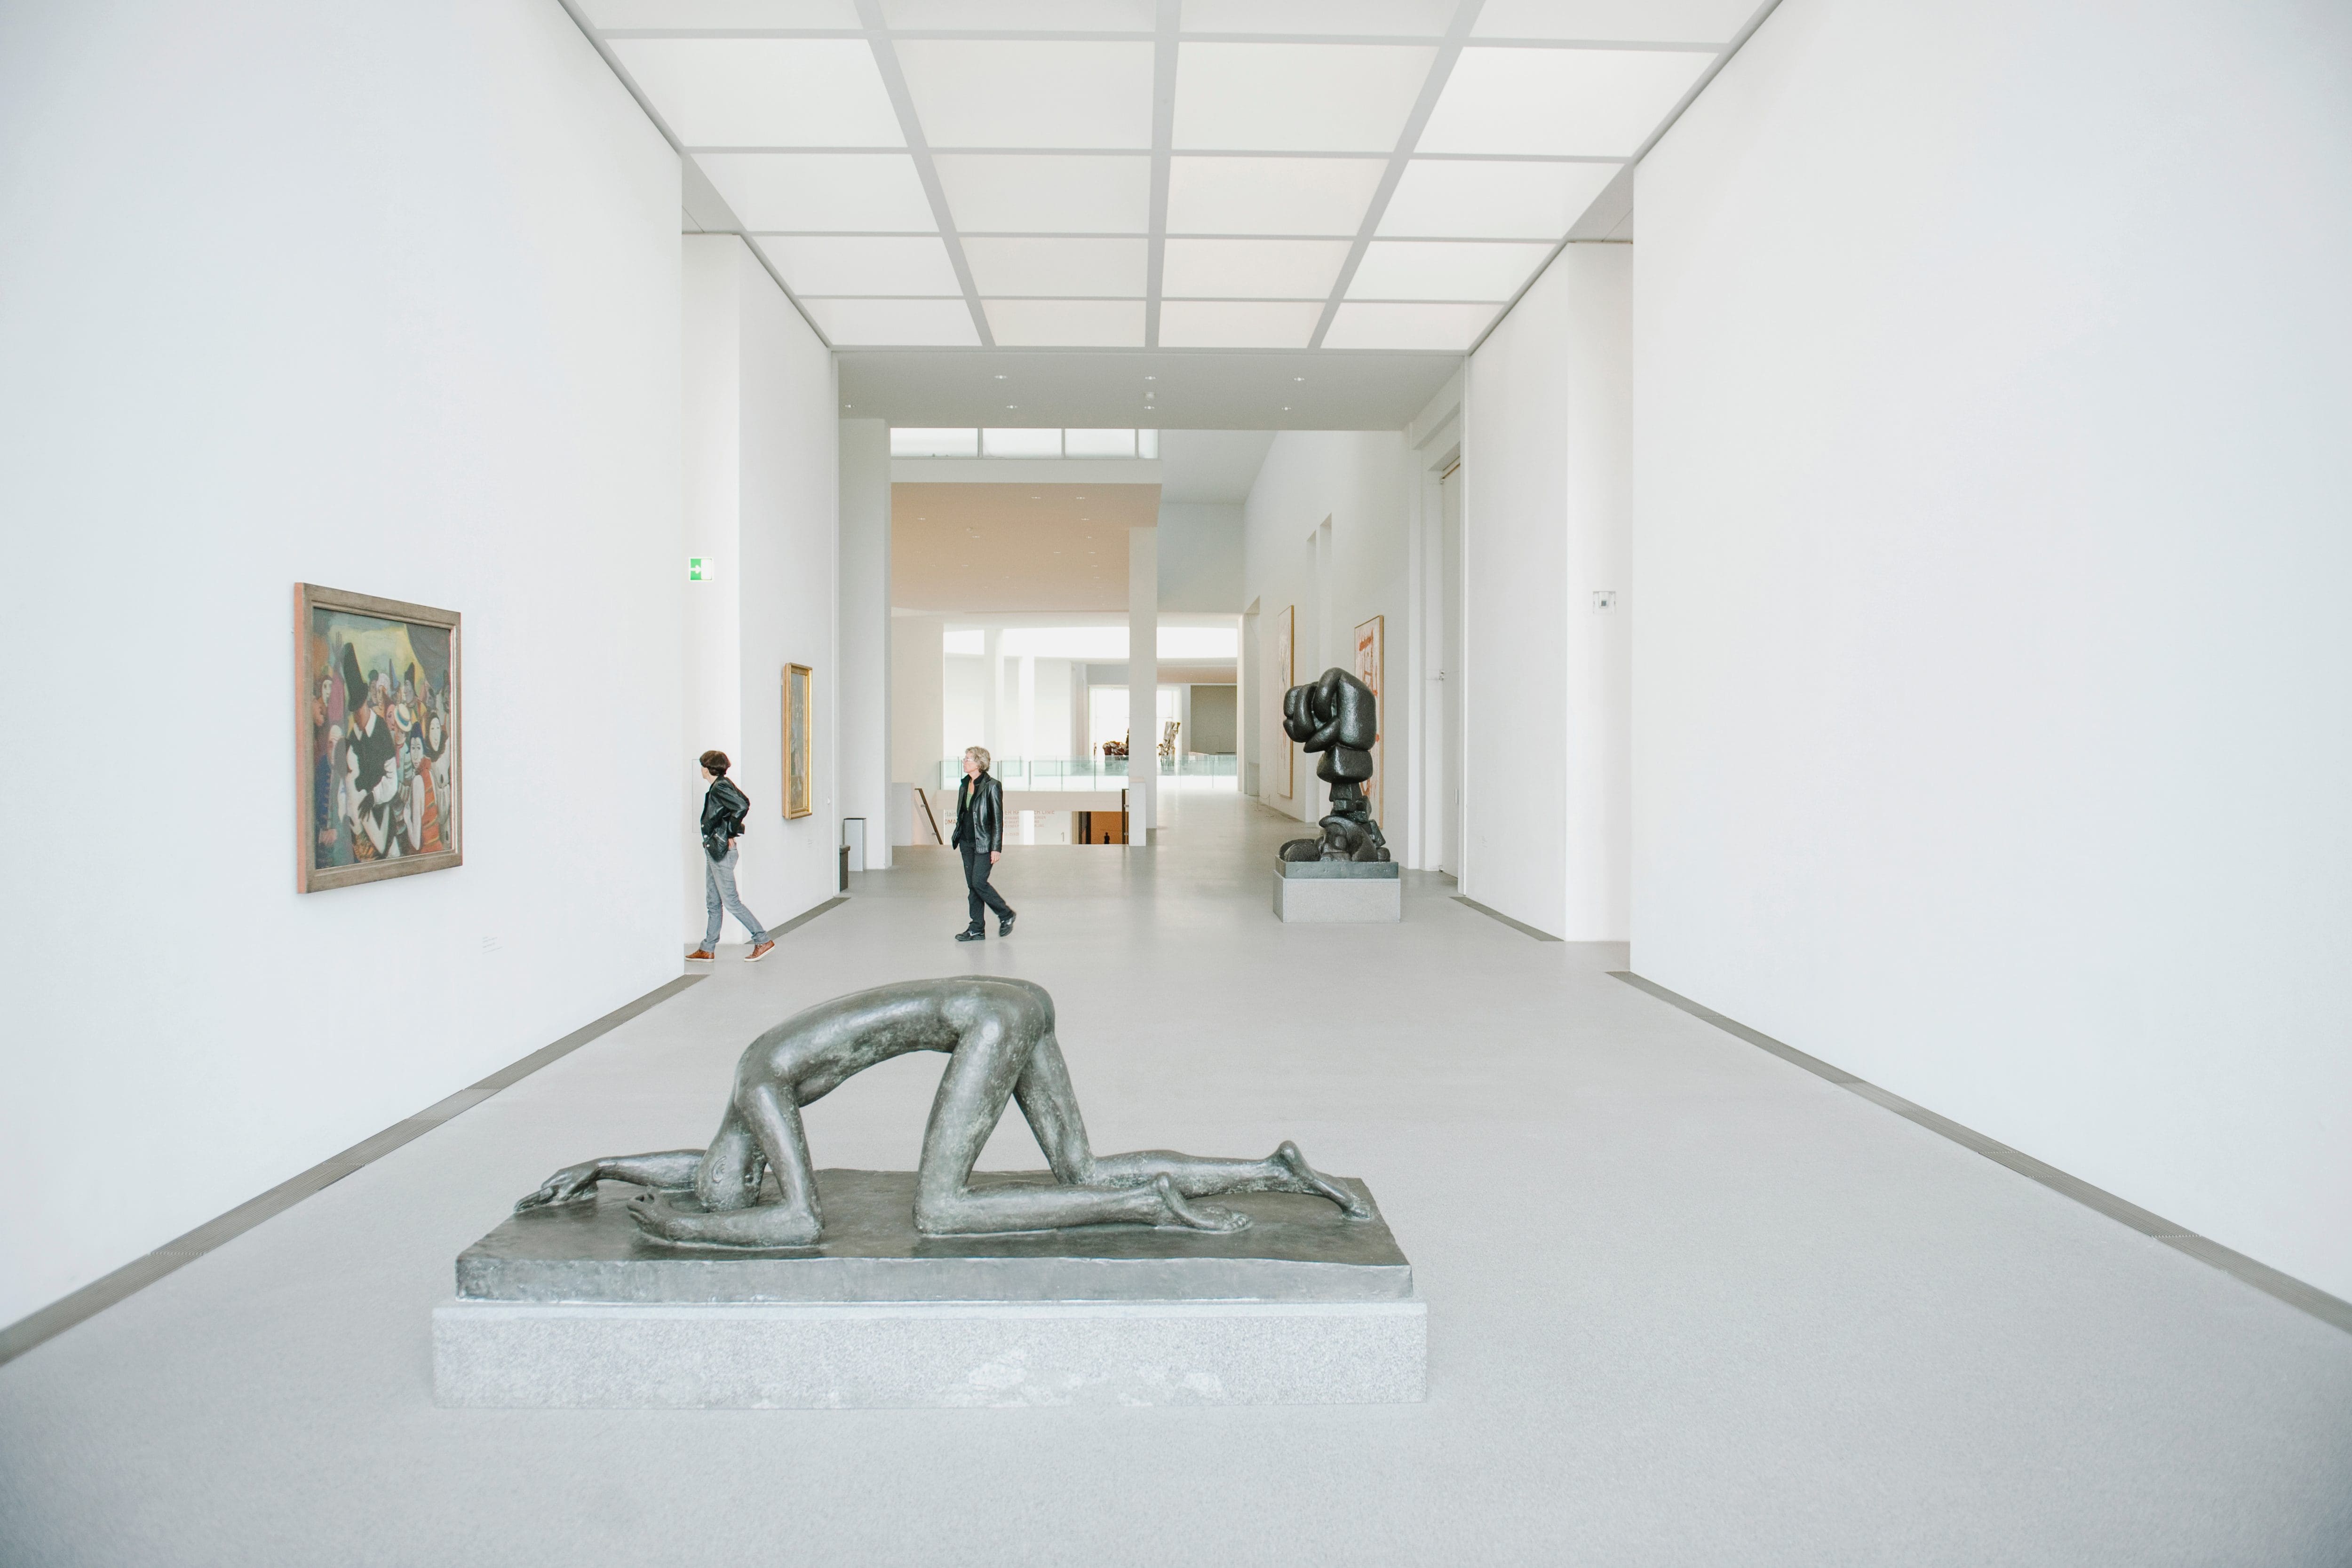 Inside the Pinakothek der Moderne